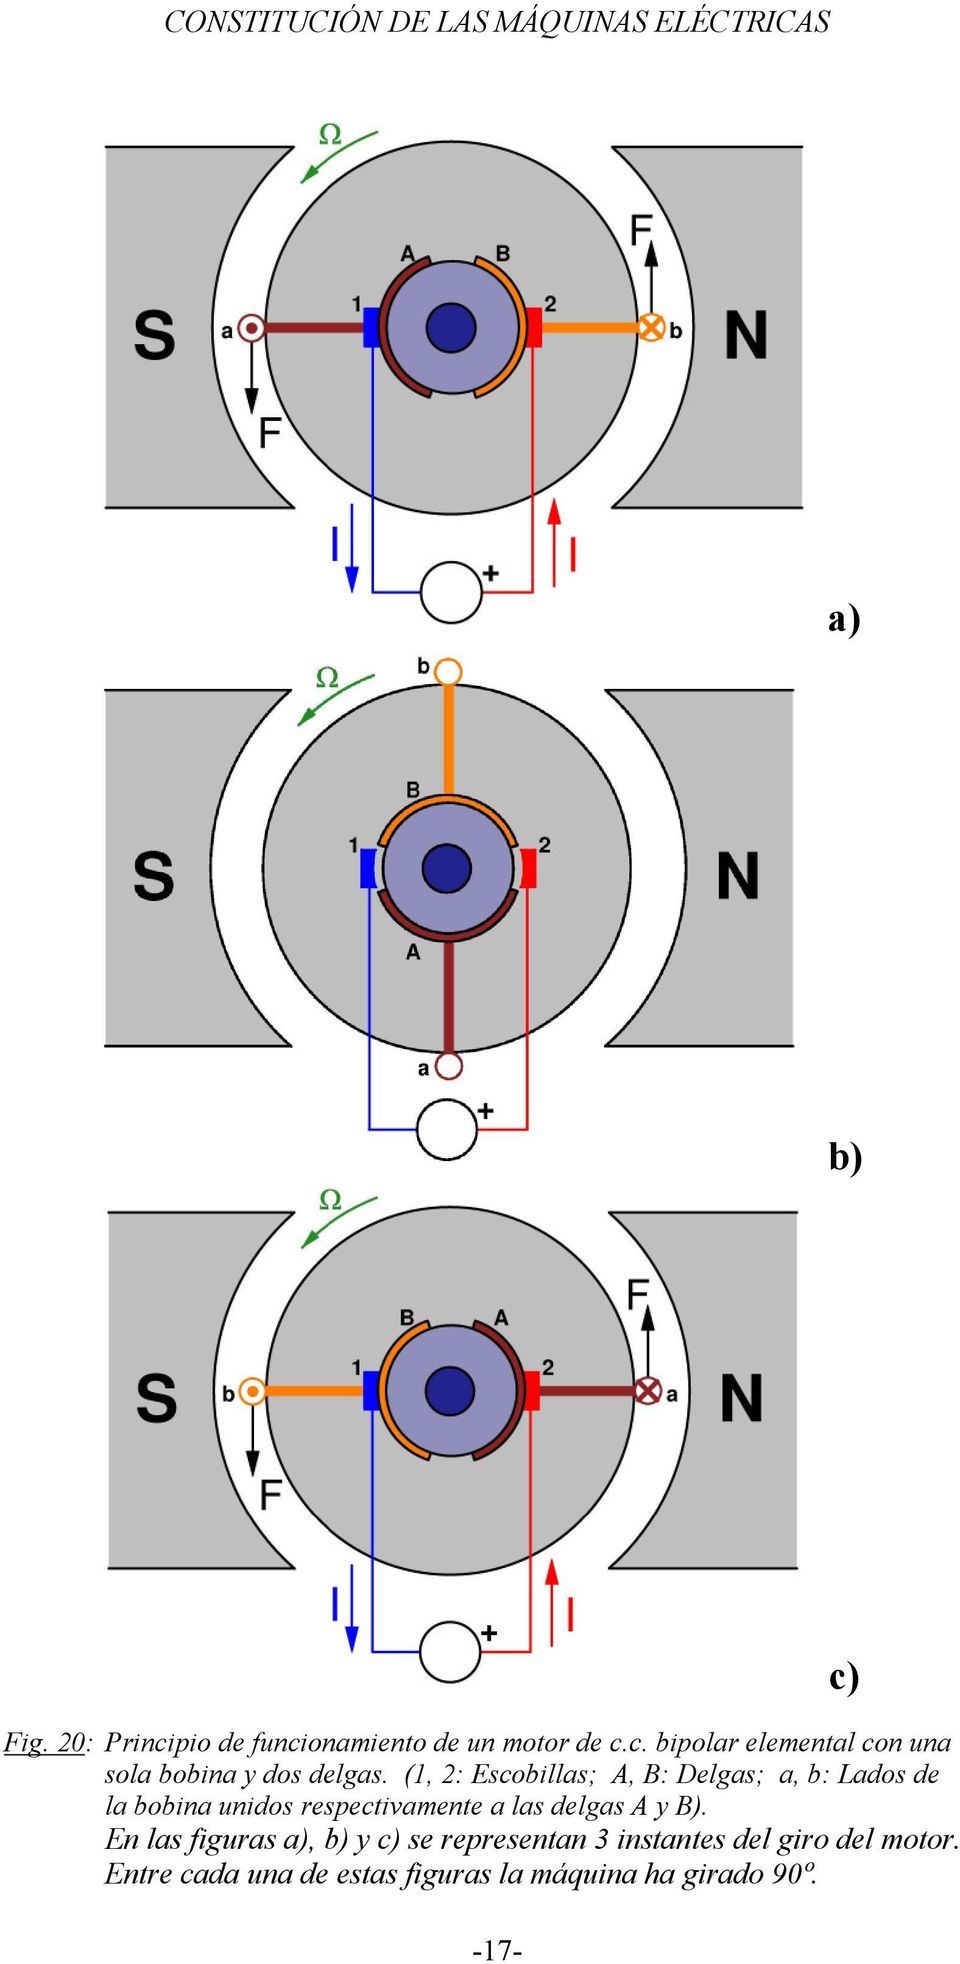 delgas A y B). En las figuras a), b) y c) se representan 3 instantes del giro del motor.